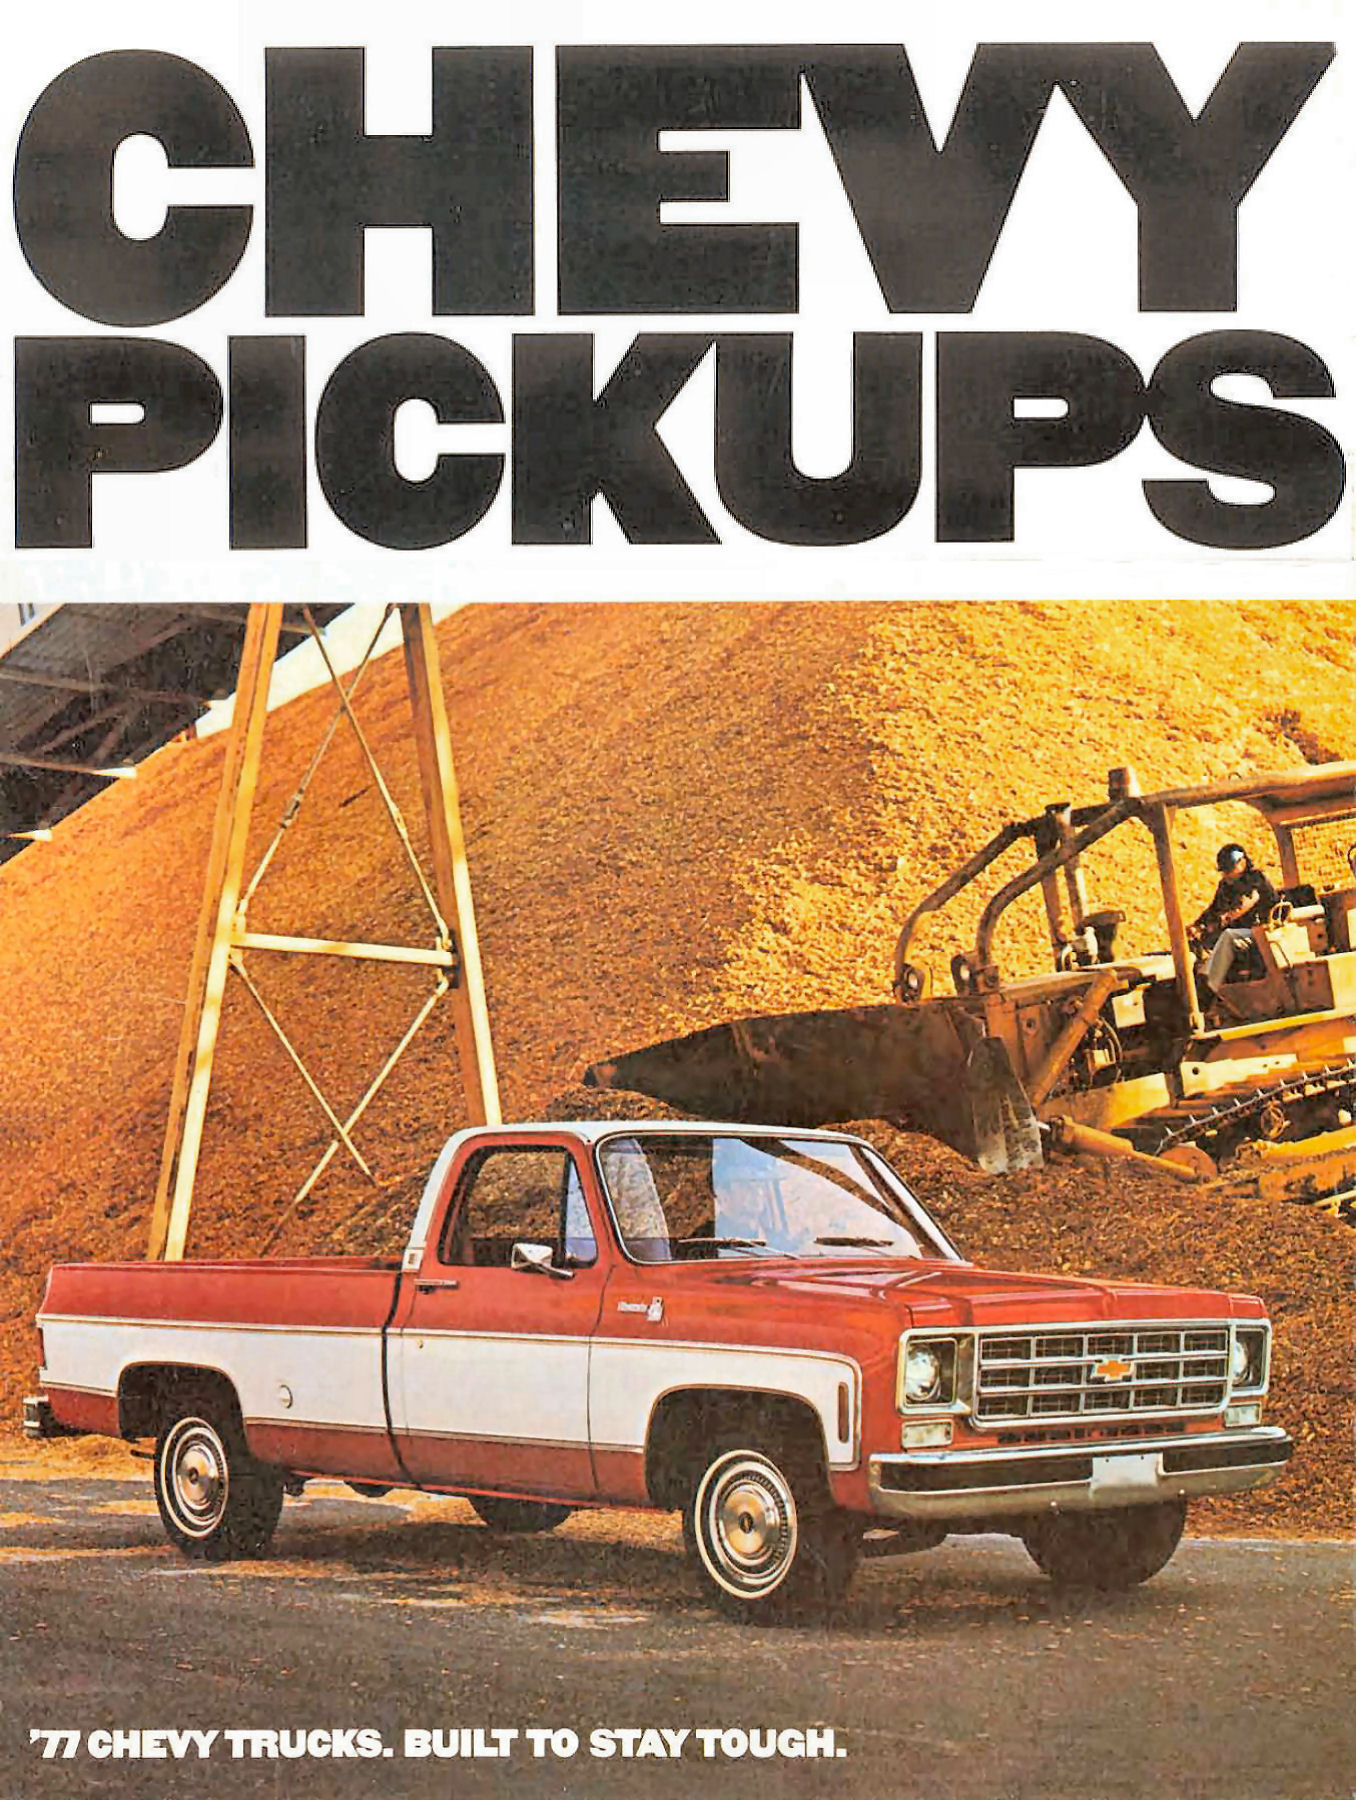 1977 Chevrolet Pickups-01